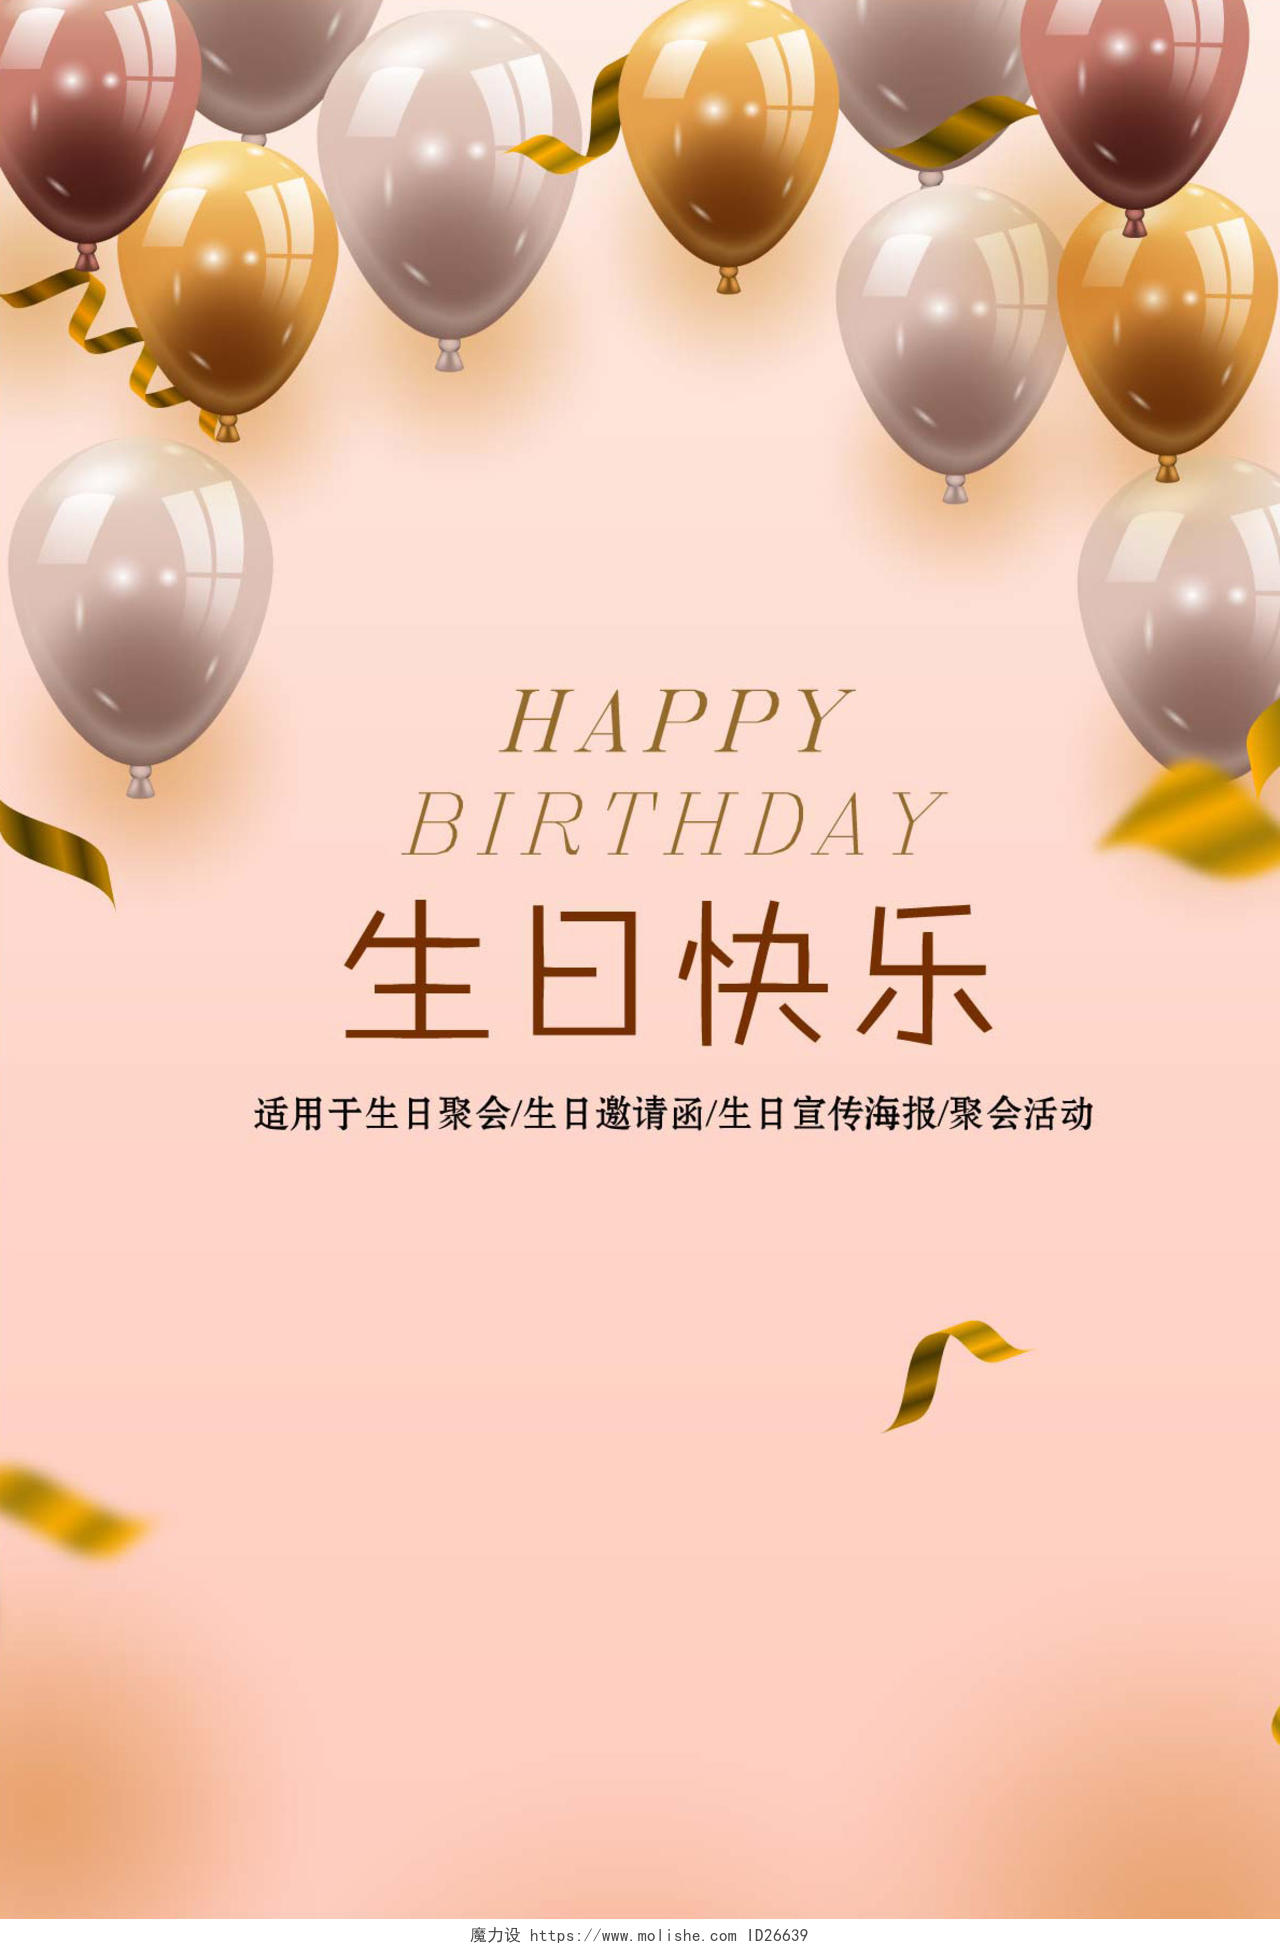 员工生日贺卡创意时尚粉红版汽球生日快乐宣传海报